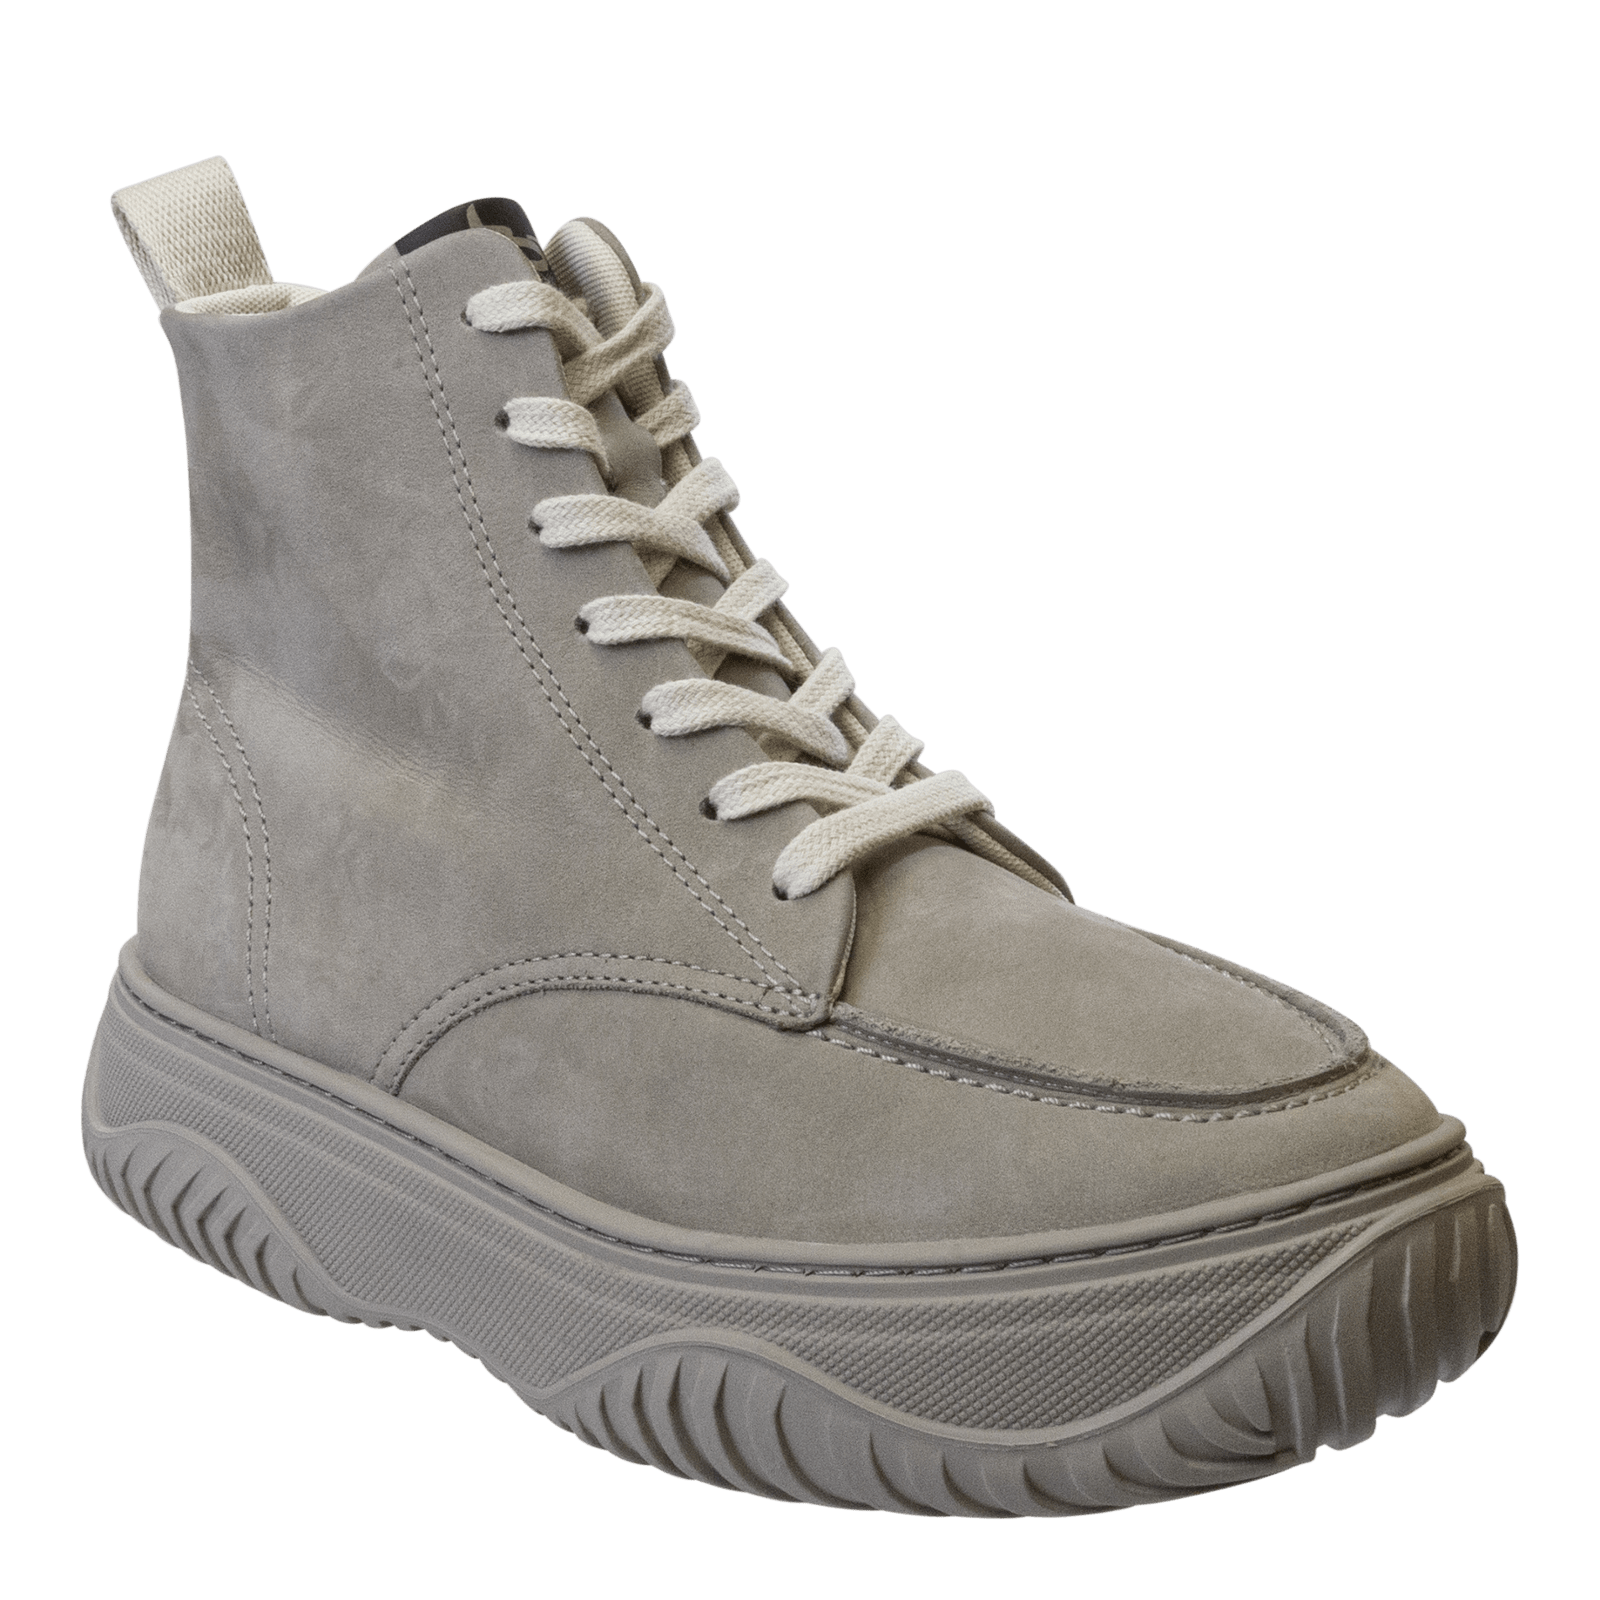 Converse Men's All Terrain Waterproof Leather Sneaker Boots - Black/Black |  Marks